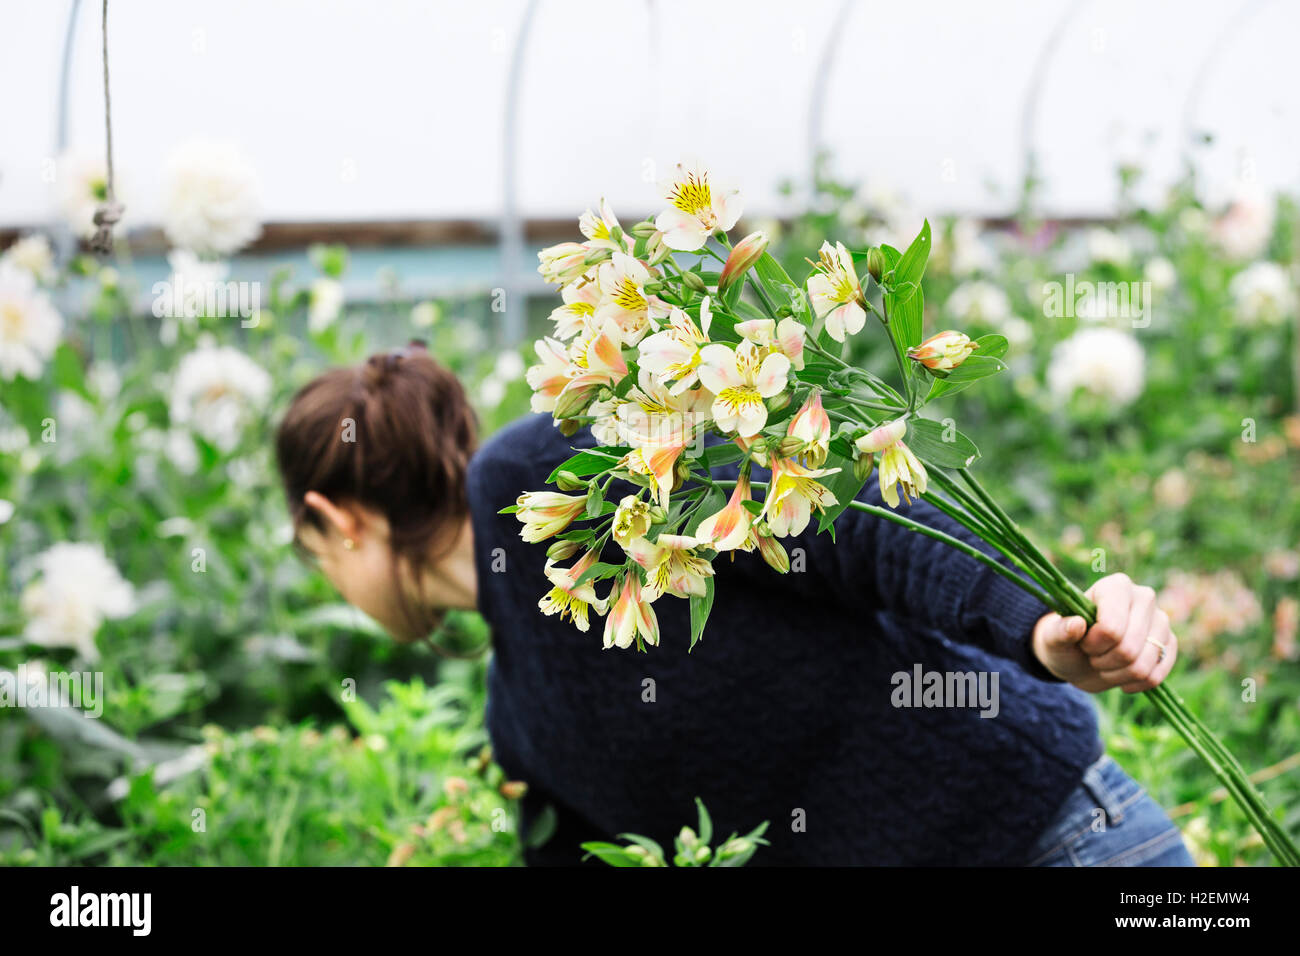 Eine Frau, die Kommissionierung Schnittblumen aus Stecklingen Betten in einem Folientunnel. Stockfoto